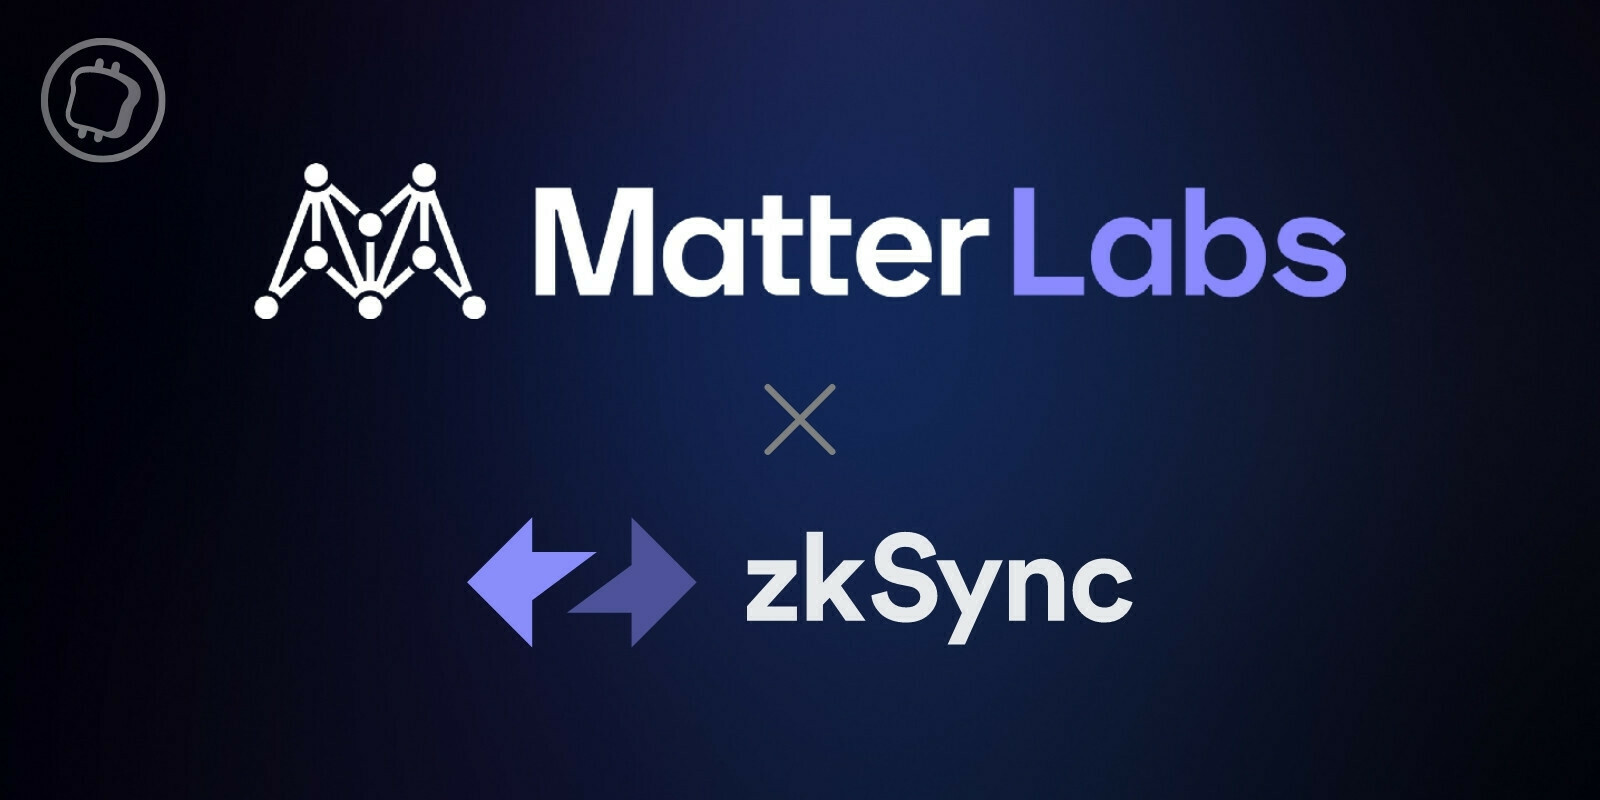 Matter Labs annonce le déploiement de zkSync 2.0 sur le mainnet dans 100 jours